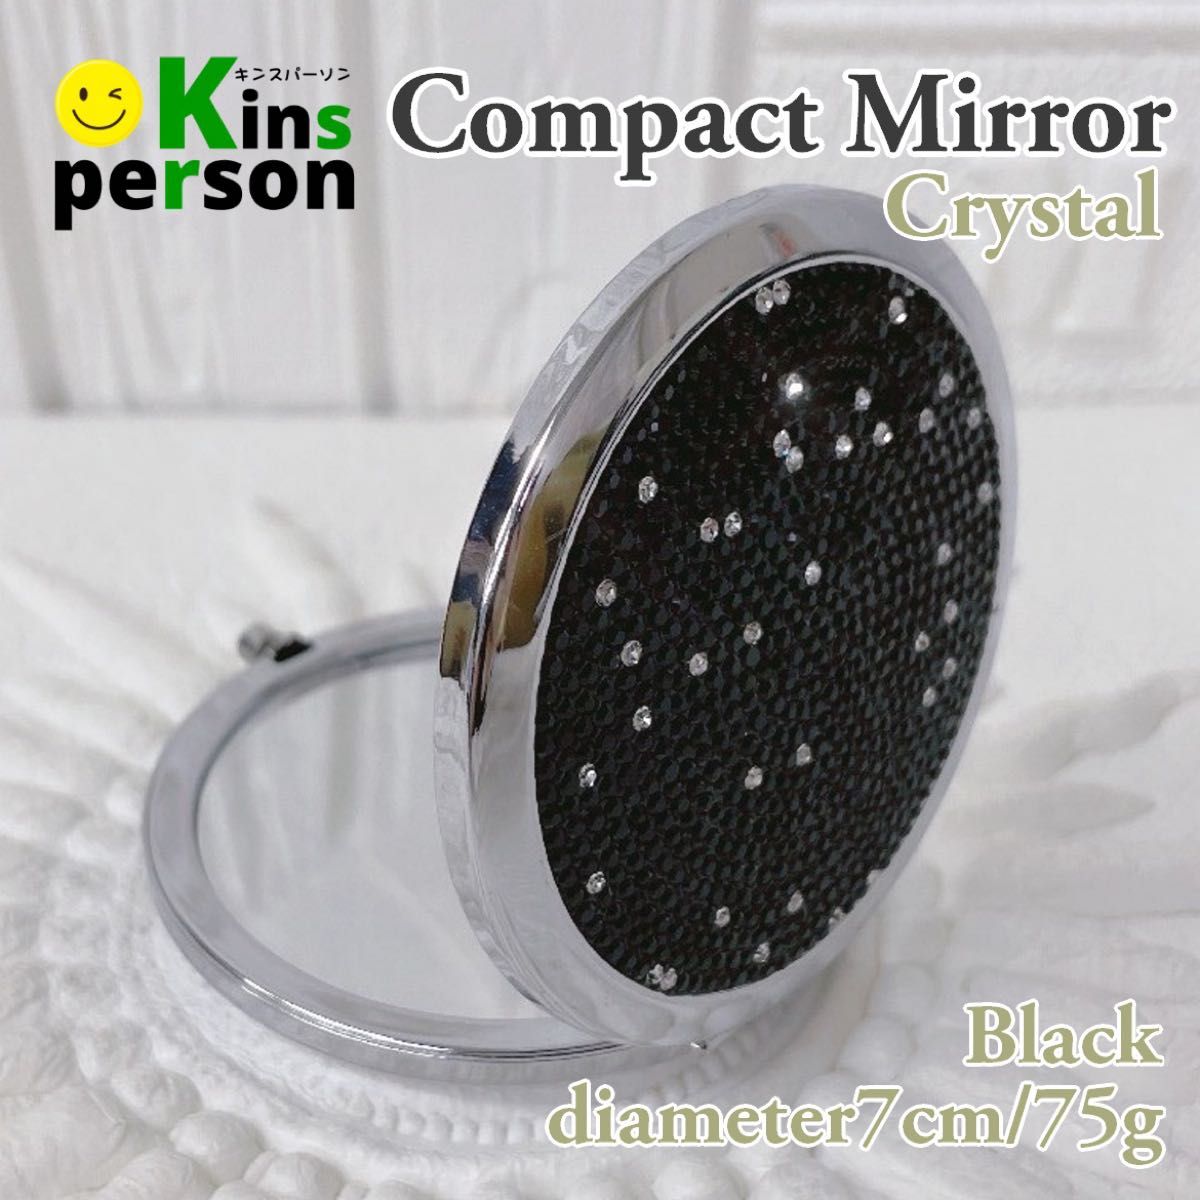 新品 クリスタル両面コンパクトミラー ブラック キラキラ ラインストーン デコレーション ダイヤモンドカット 手鏡 携帯用ミラー